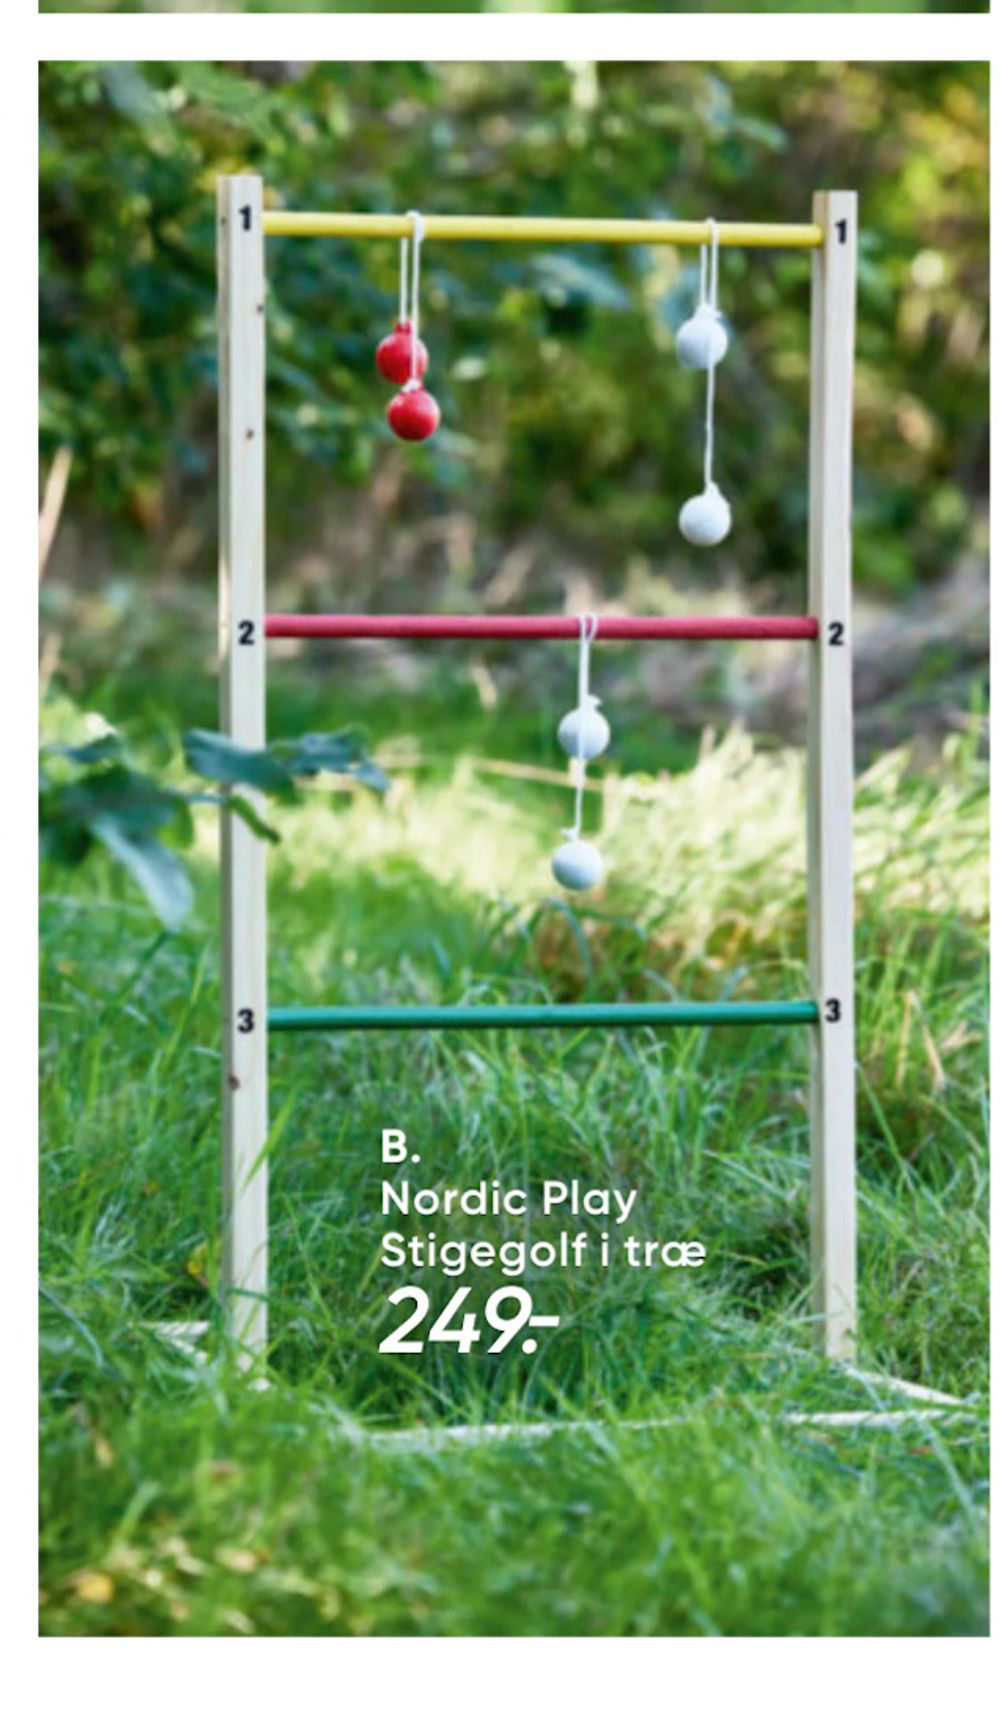 Tilbud på Nordic Play Stigegolf i træ fra Bilka til 249 kr.